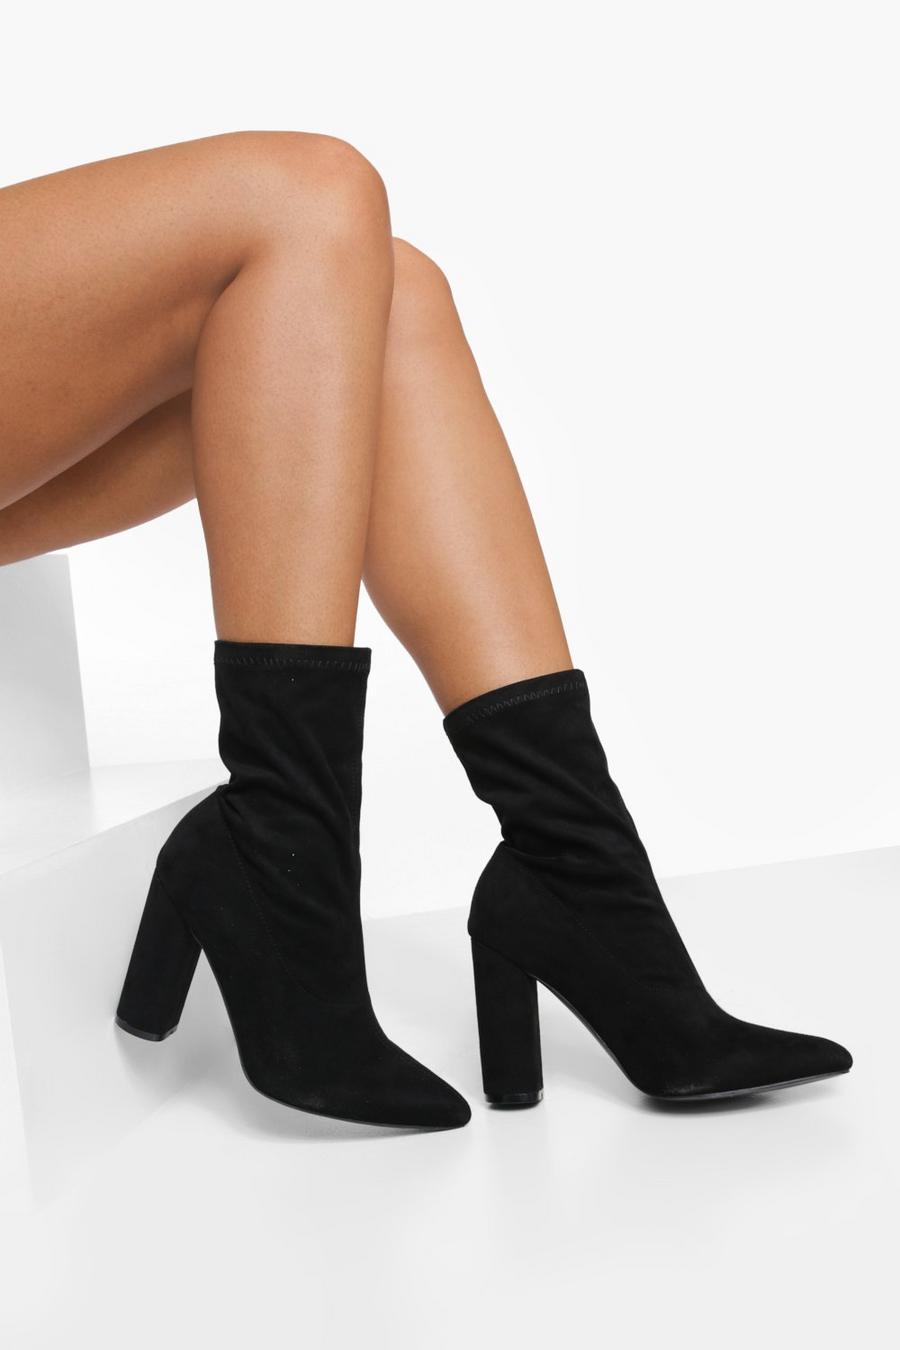 Botas calcetín de holgura ancha con punta de pico y tacón grueso, Black negro